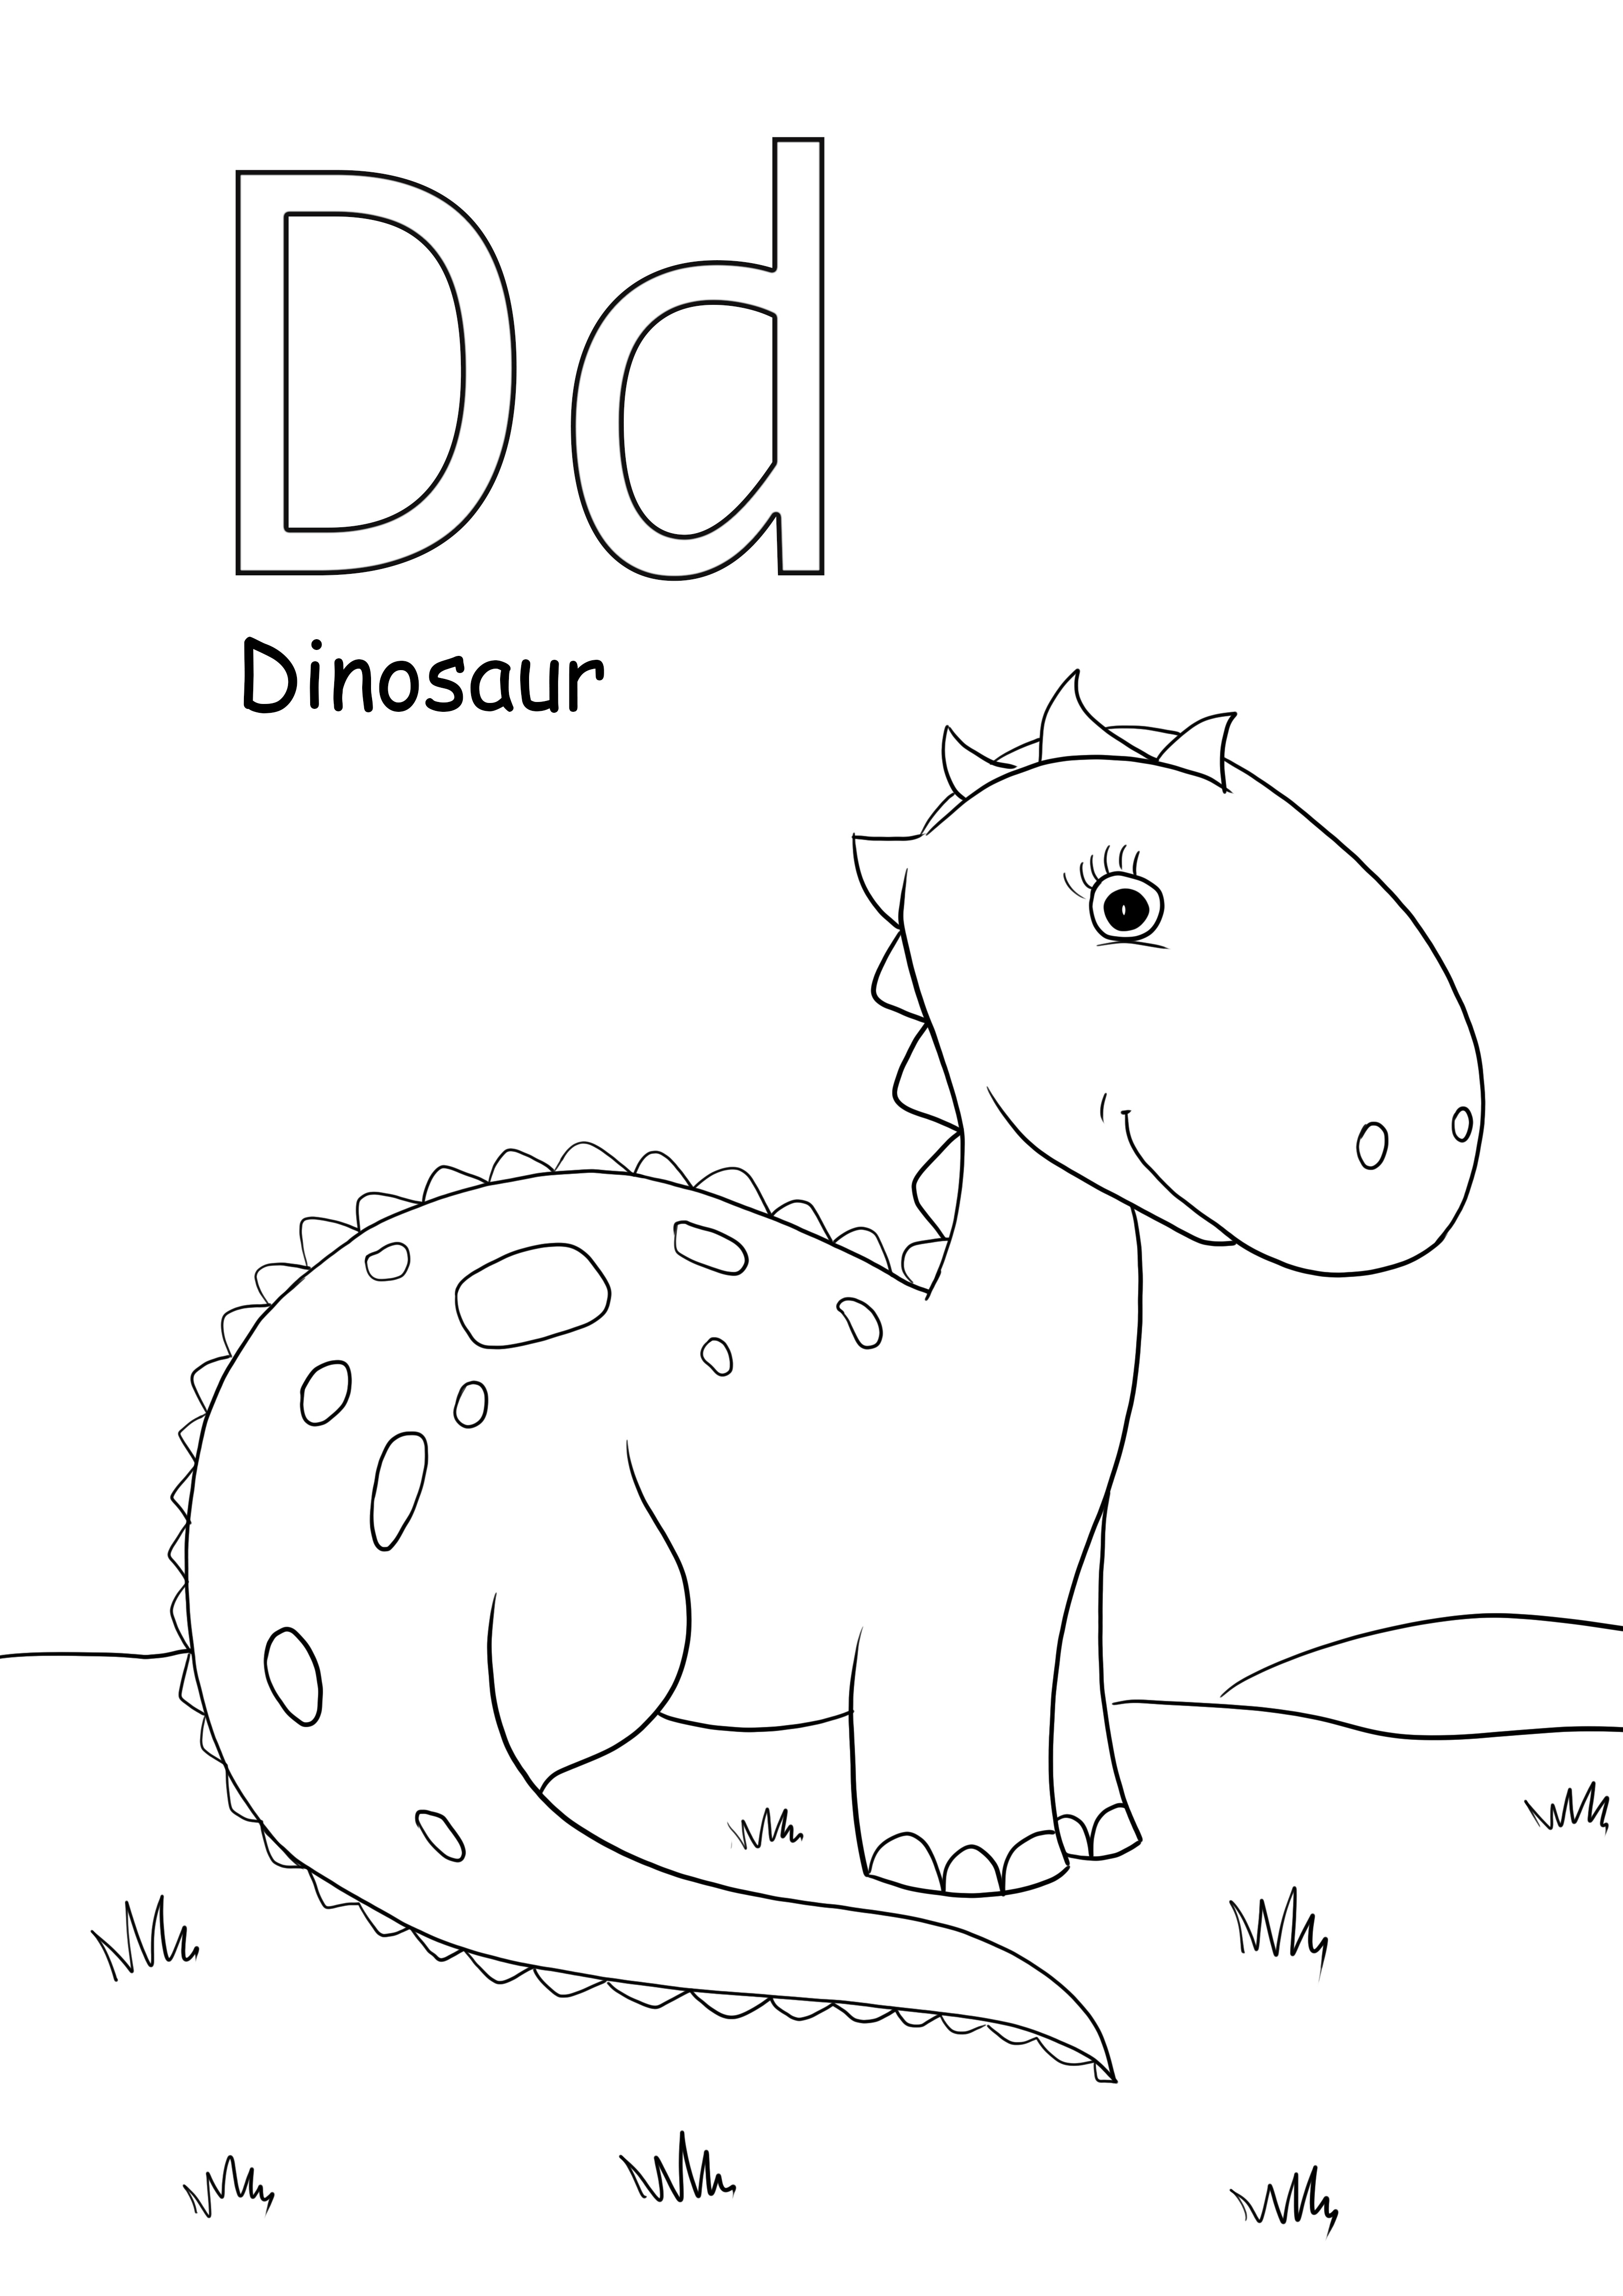 d oznacza obrazy do kolorowania dinozaurów i można je wydrukować za darmo